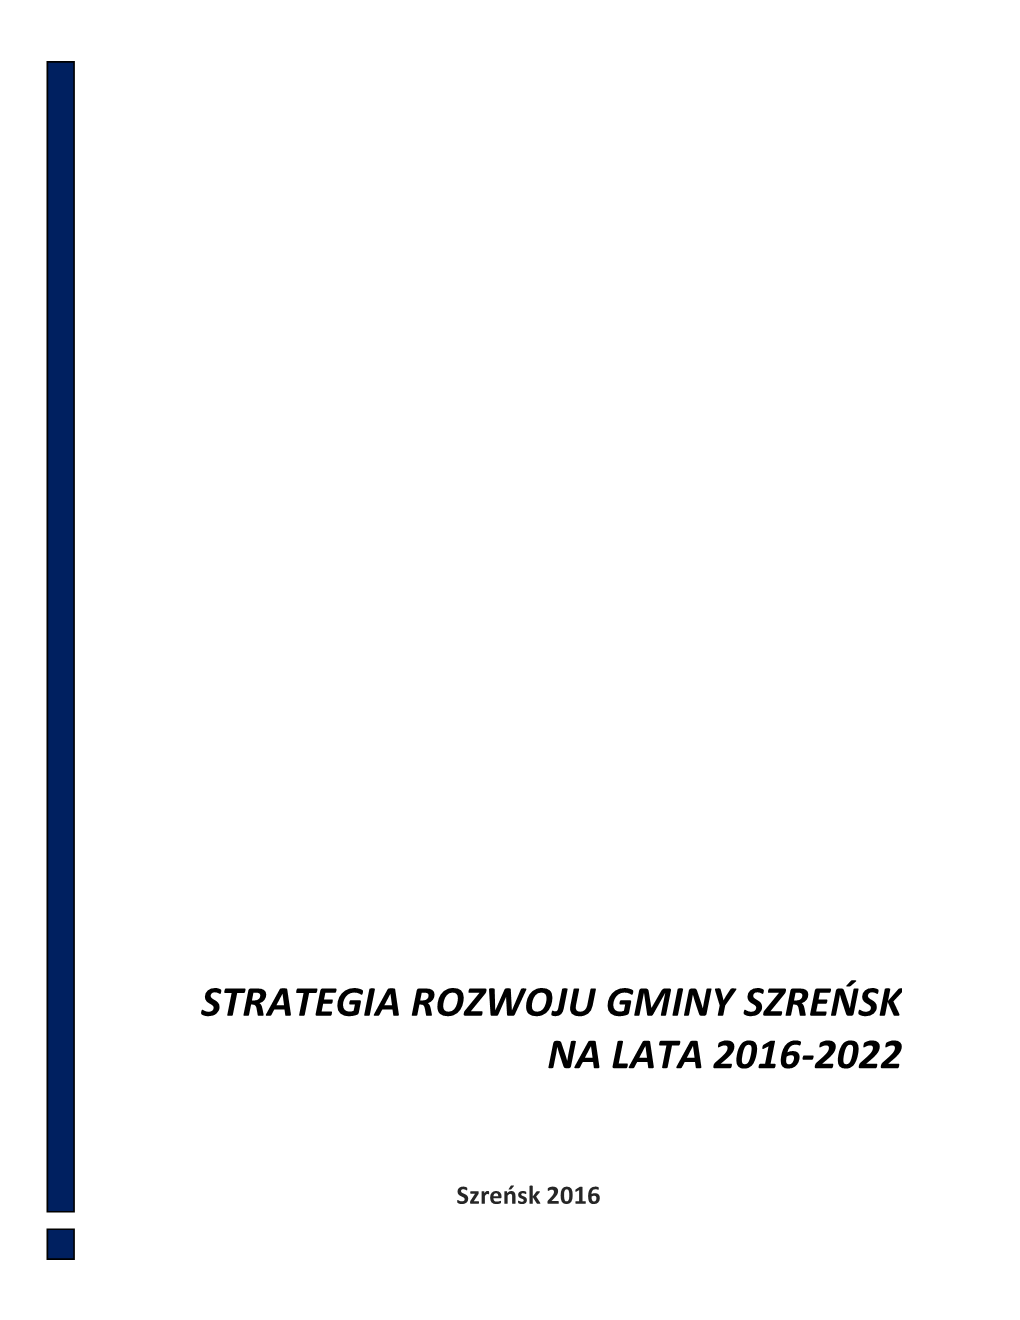 Strategia Rozwoju Gminy Szreńsk Na Lata 2016-2022